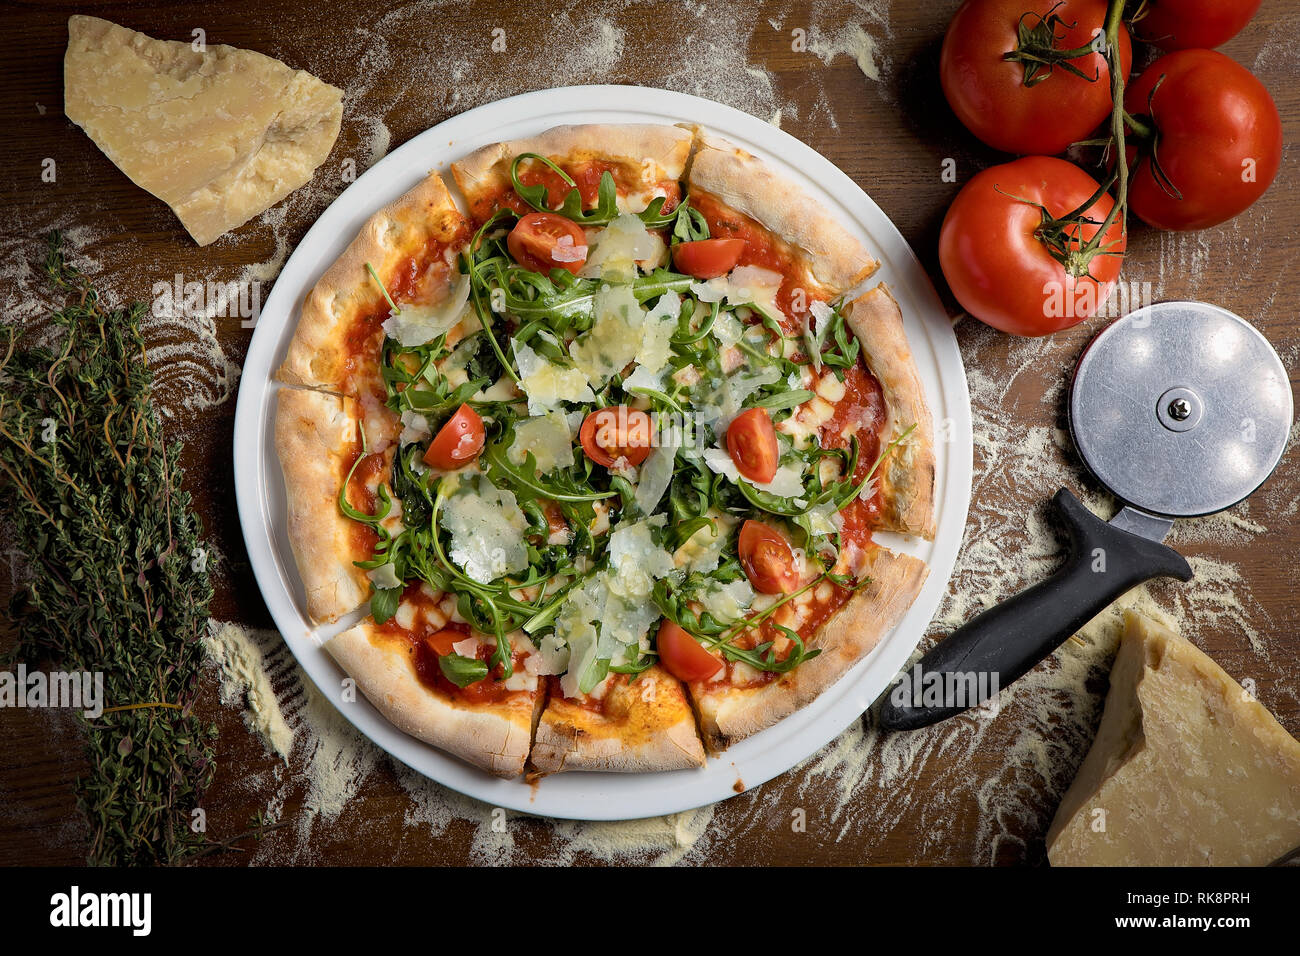 Photo de haut en bas d'une pizza végétarienne à croûte mince avec tomate, parmesan, roquette sur une base de tomate Banque D'Images